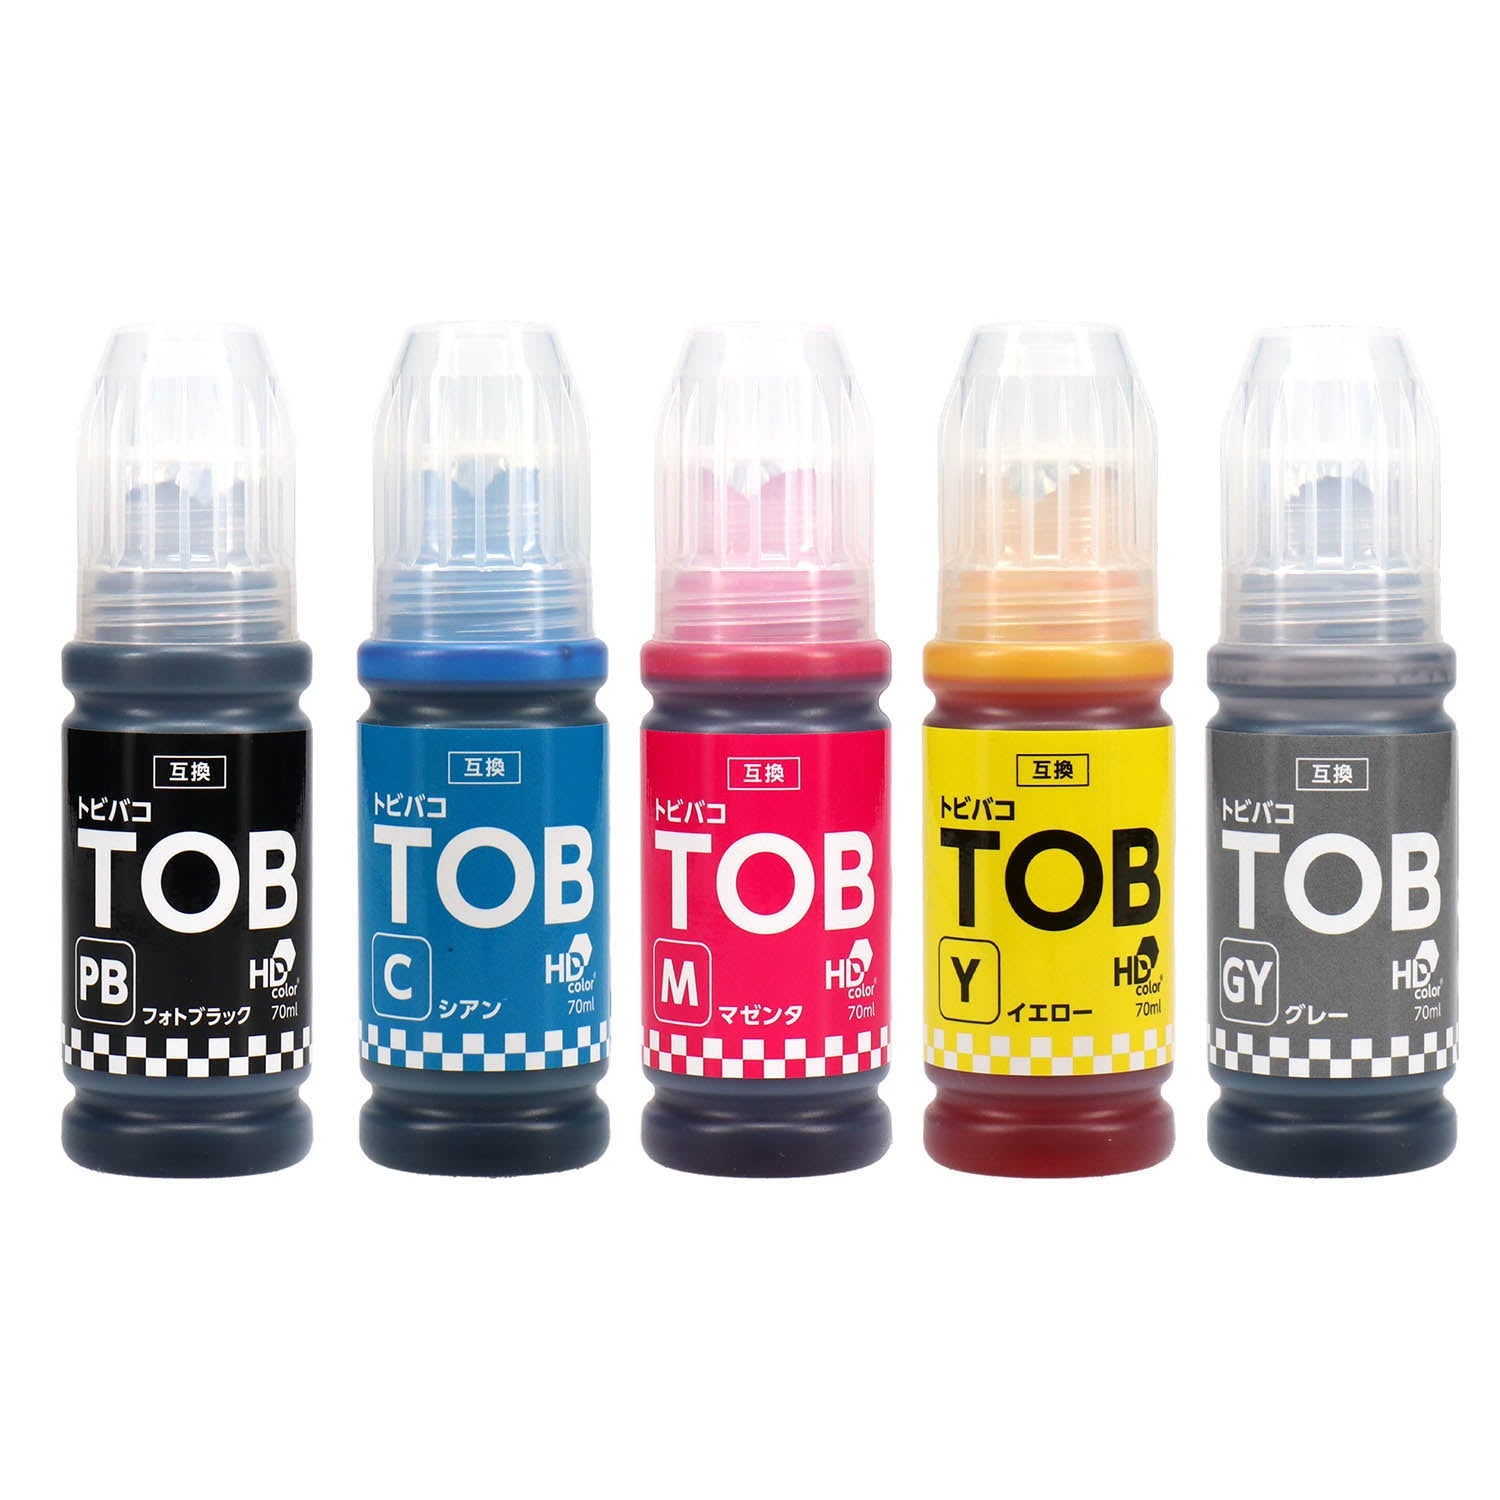 エプソン用 TOB (トビバコ) 互換インクボトル 染料 5色セット